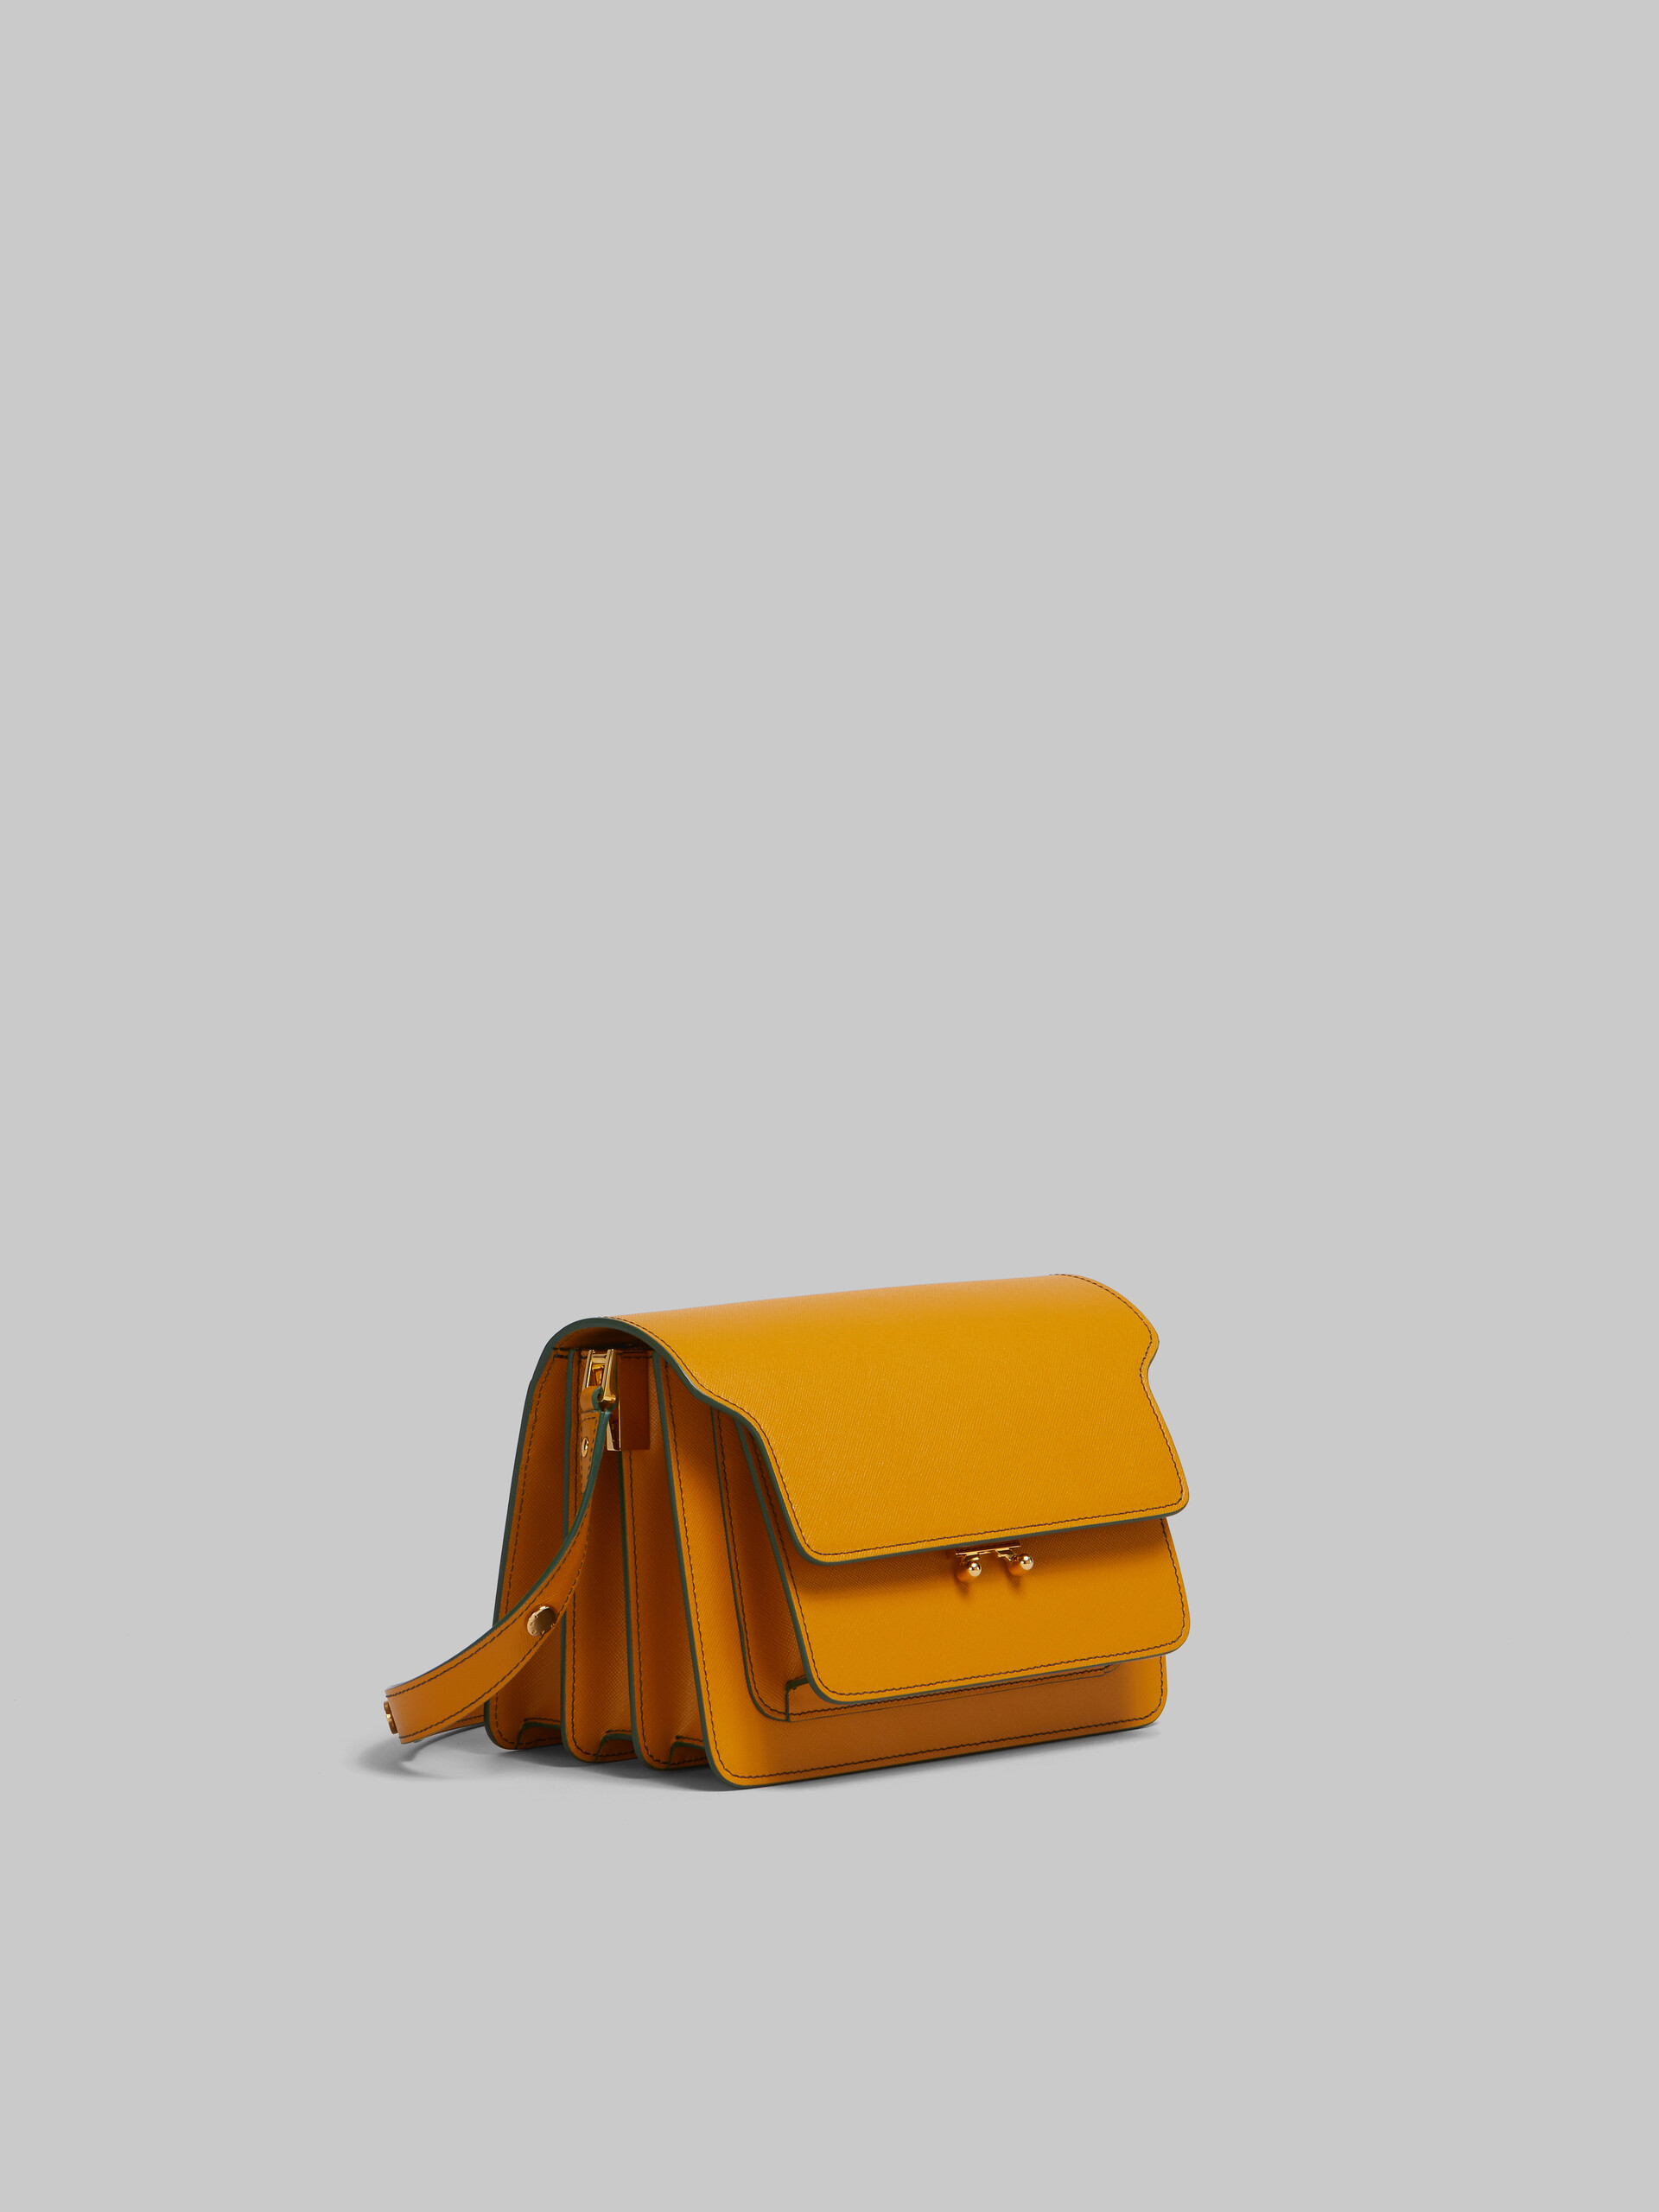 Sac Trunk de taille moyenne en cuir Saffiano beige - Sacs portés épaule - Image 6